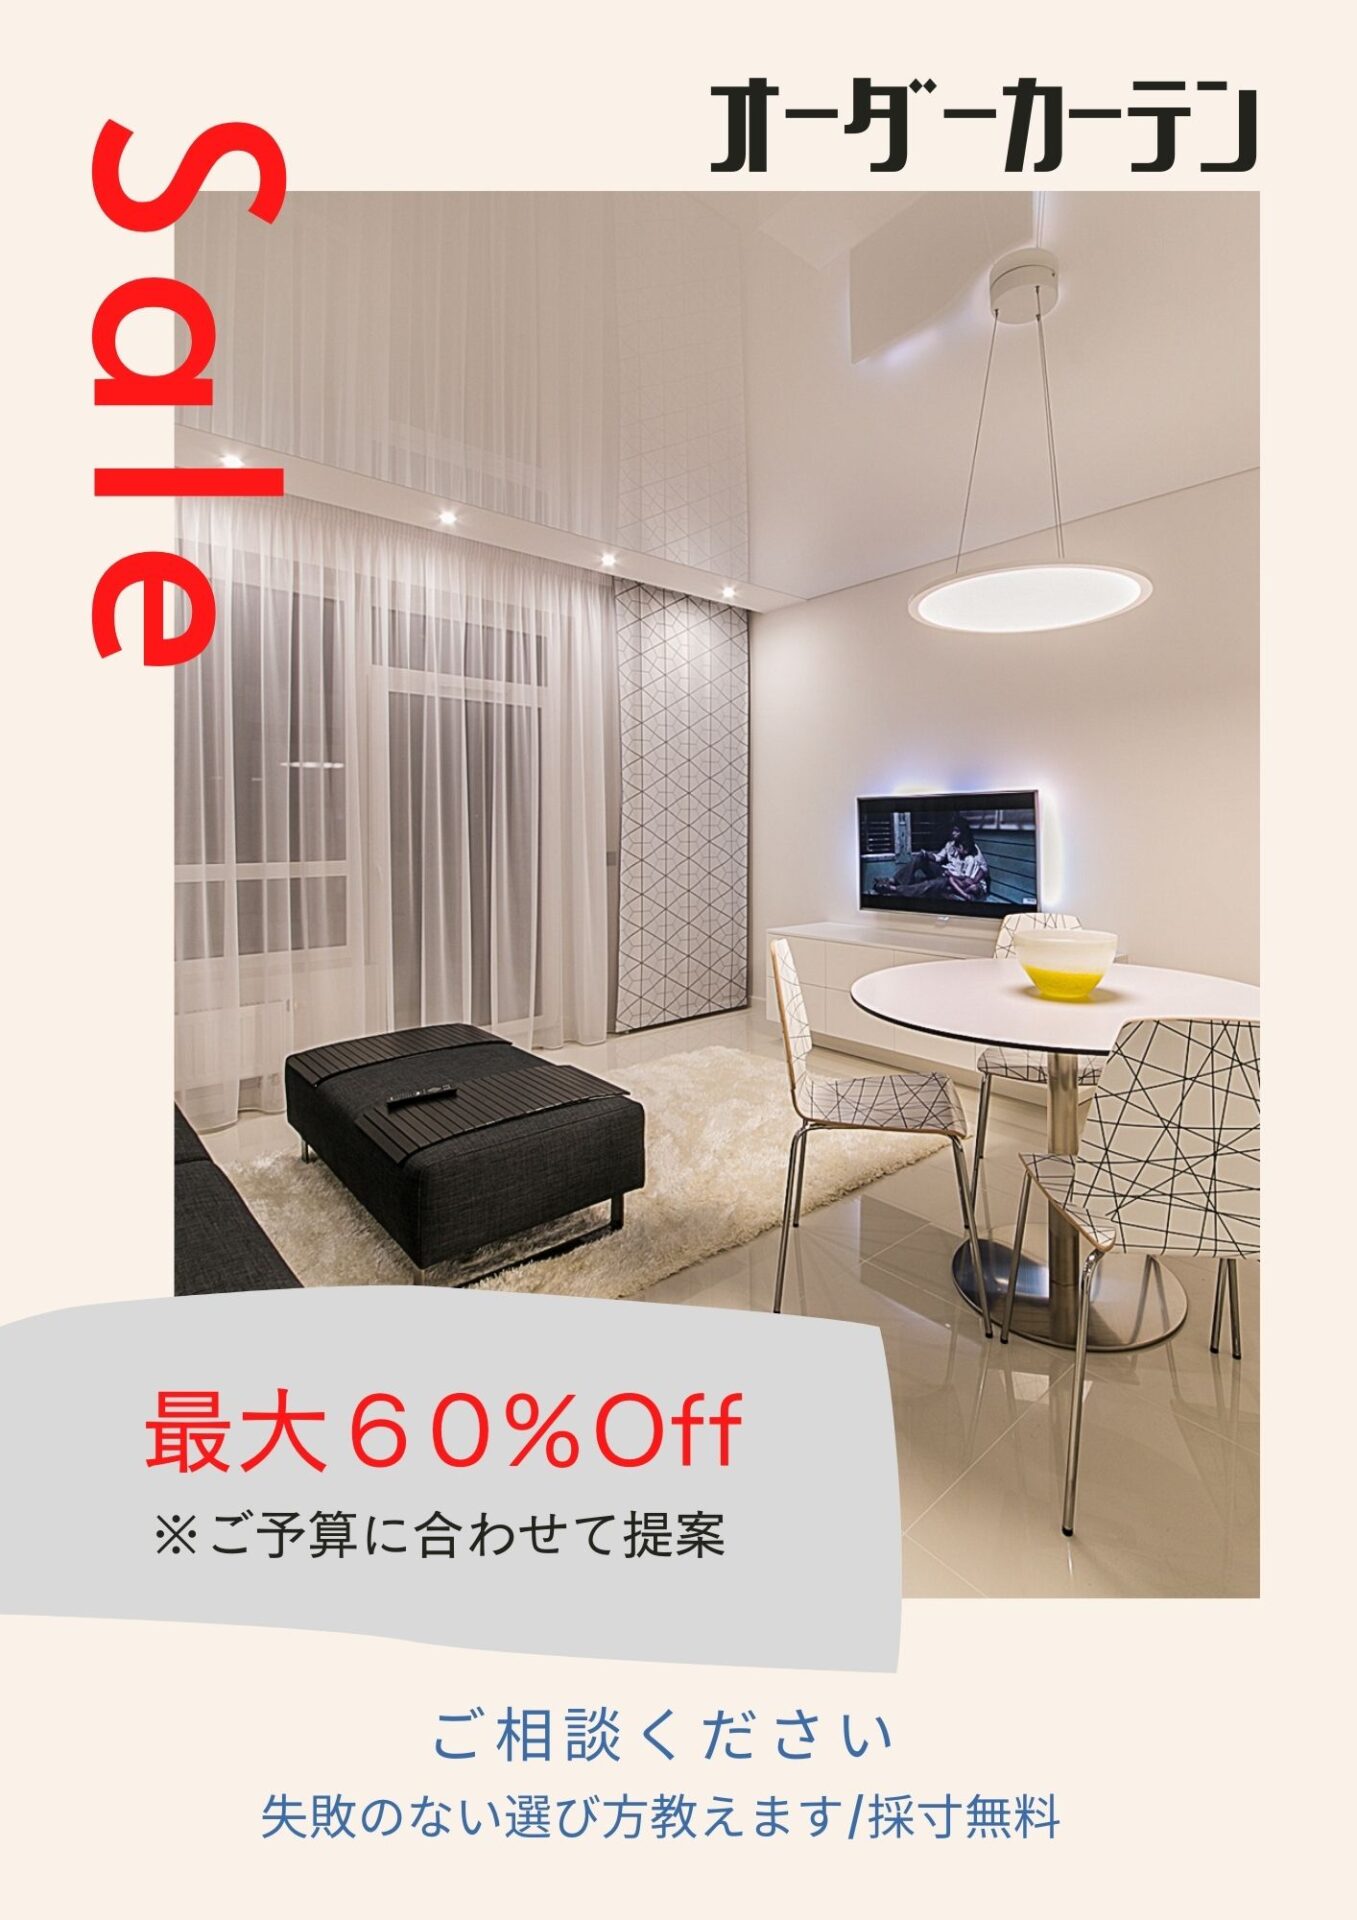 オーダーカーテンフェア 安価なものから高級グレードまで多数幅広く取り揃えております | | 栃木県栃木市でデザイン住宅、長期優良住宅ならエレフォン。